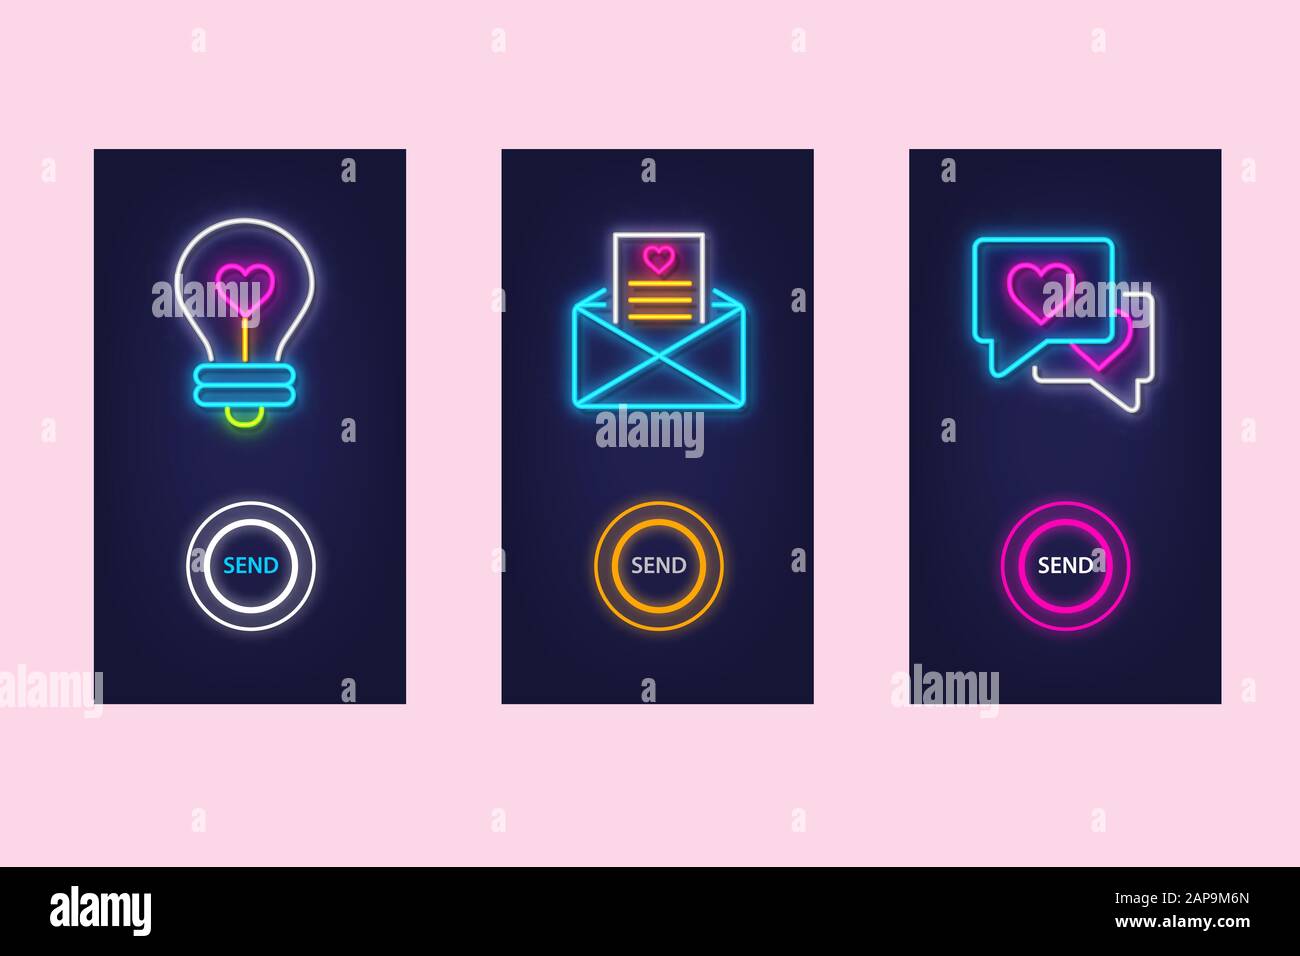 Die mobile App ist mit Glimmsymbolen aus Neon sehr gut eingerichtet. Virtuelle Liebe. UI-Design. Vektor. Stock Vektor